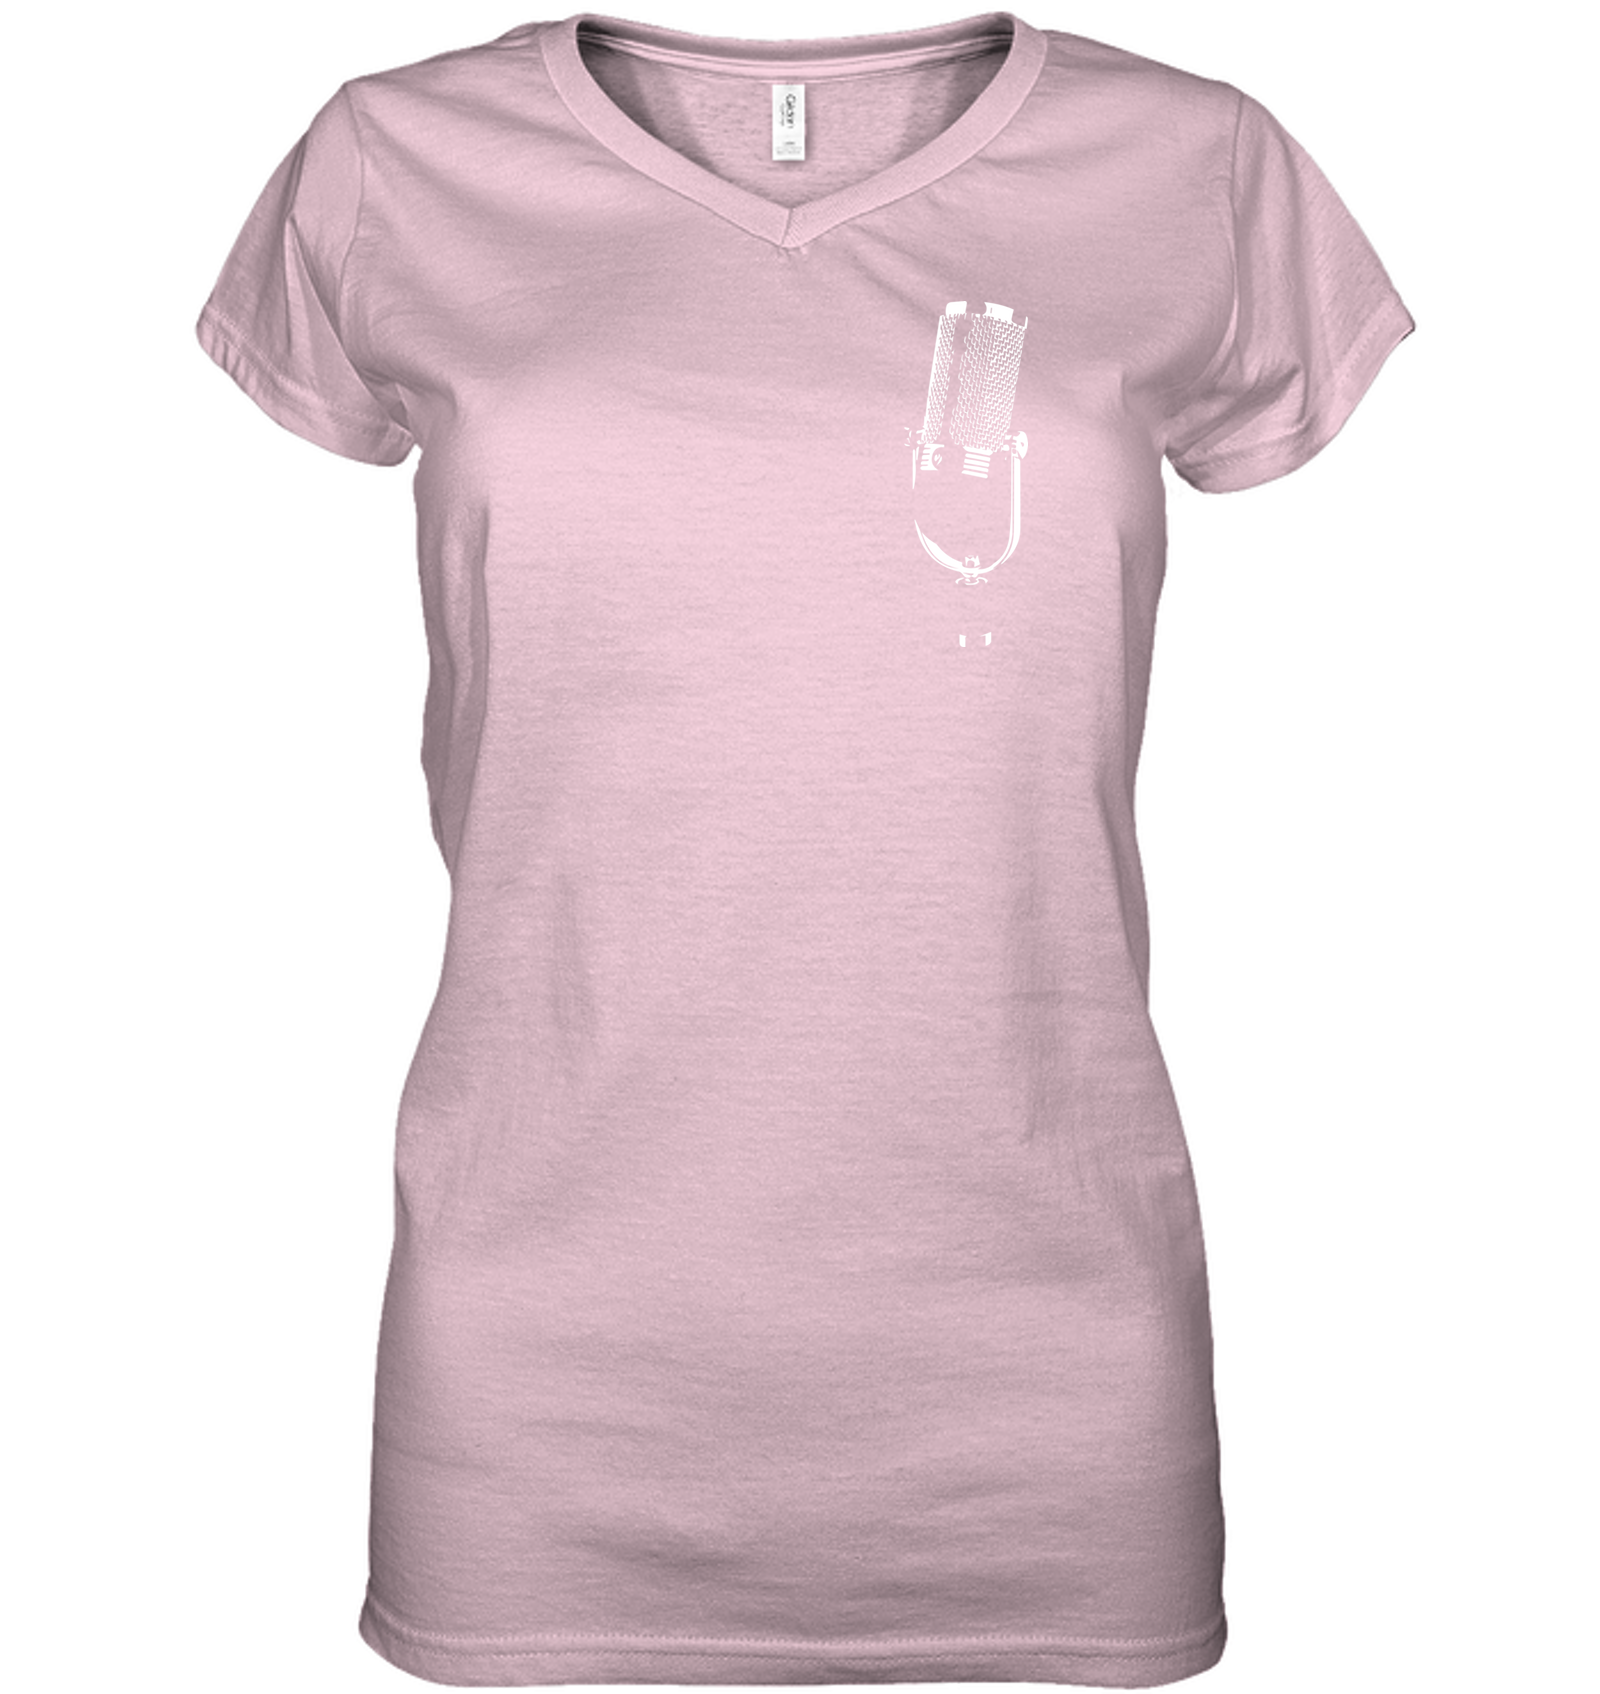 The Mic (Pocket Size) - Hanes Women's Nano-T® V-Neck T-Shirt